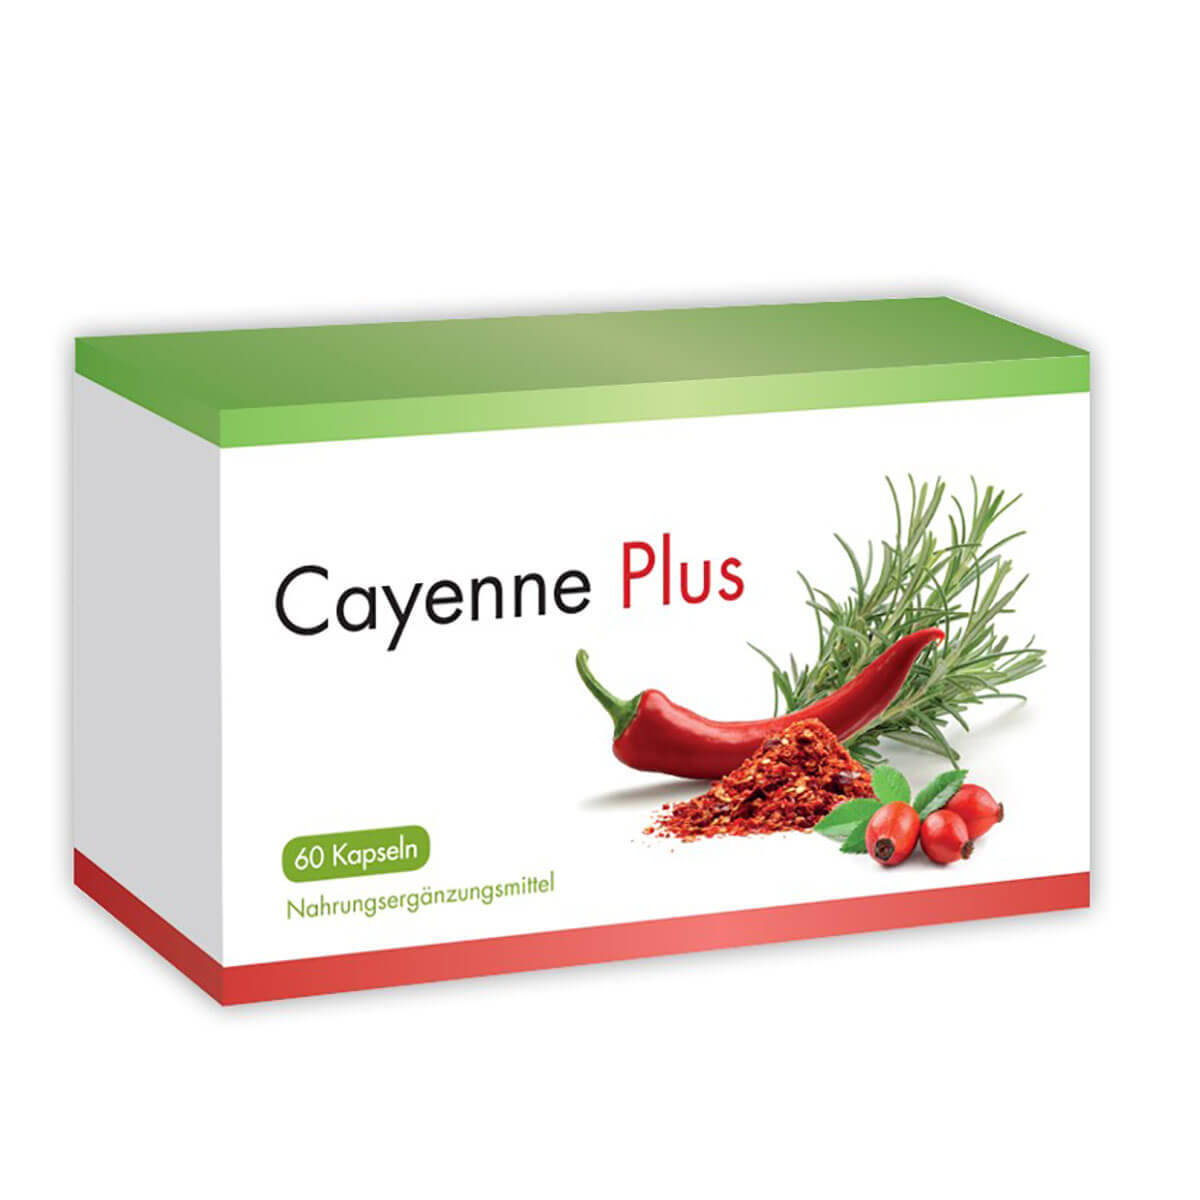 Cayenne Plus